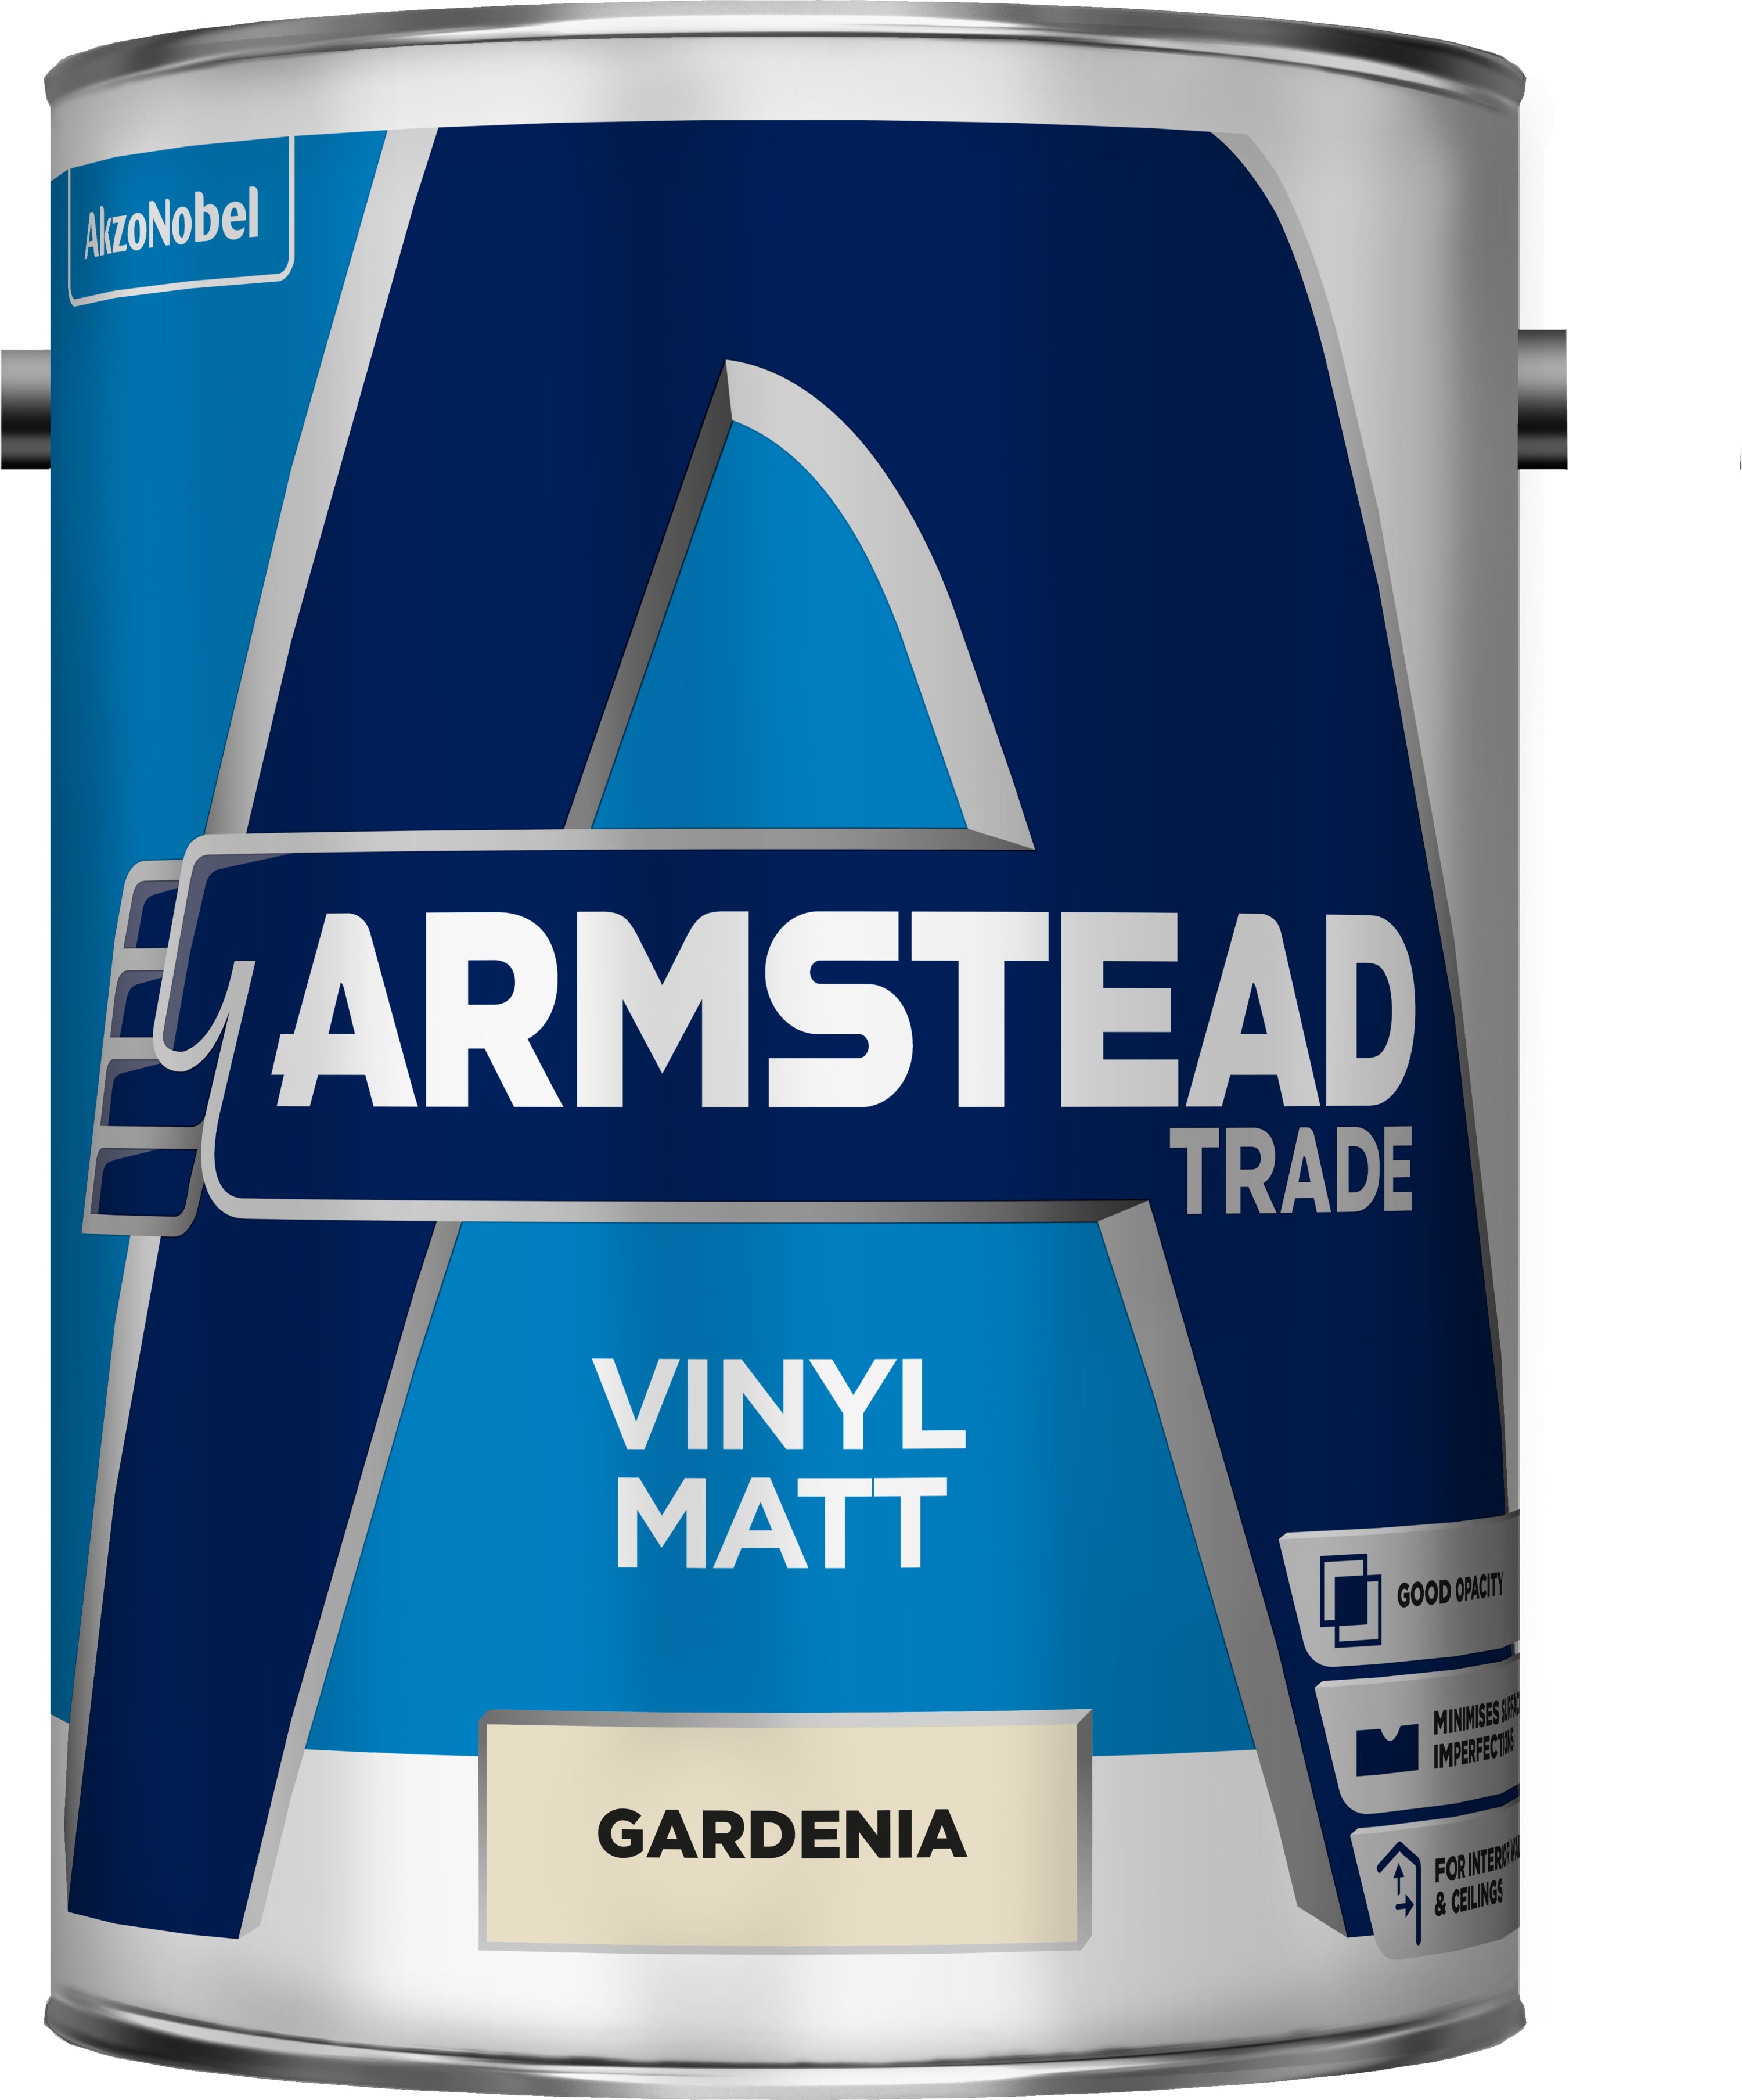 Armstead Trade Vinyl Matt Gardenia 5L